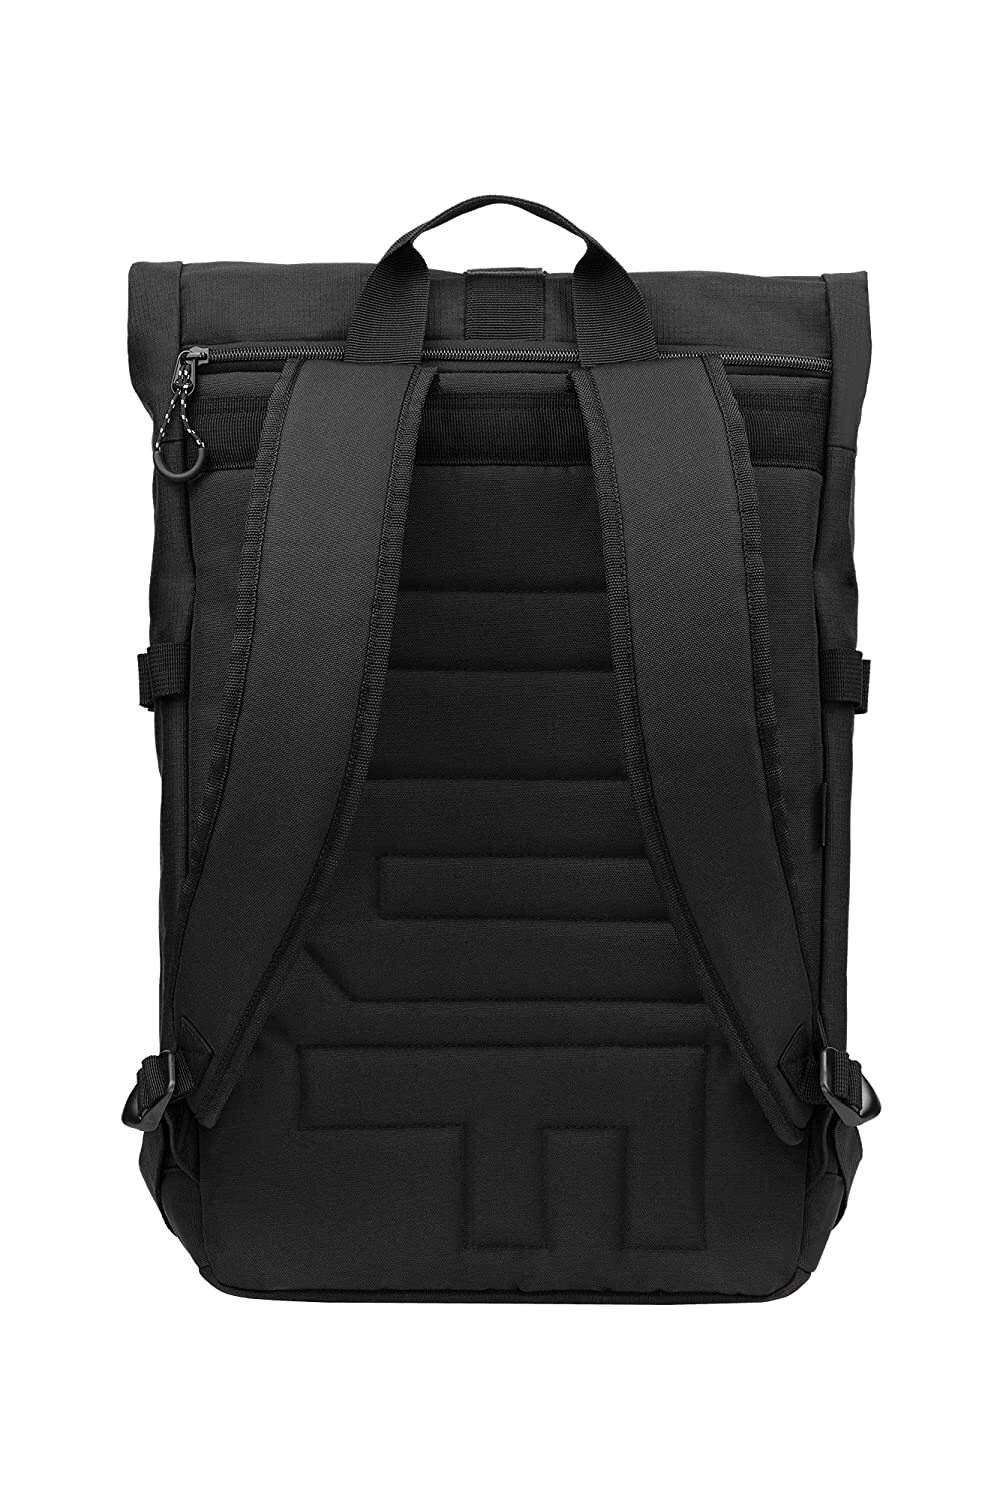 ASUS VP4700 TUF Gaming Backpack 17